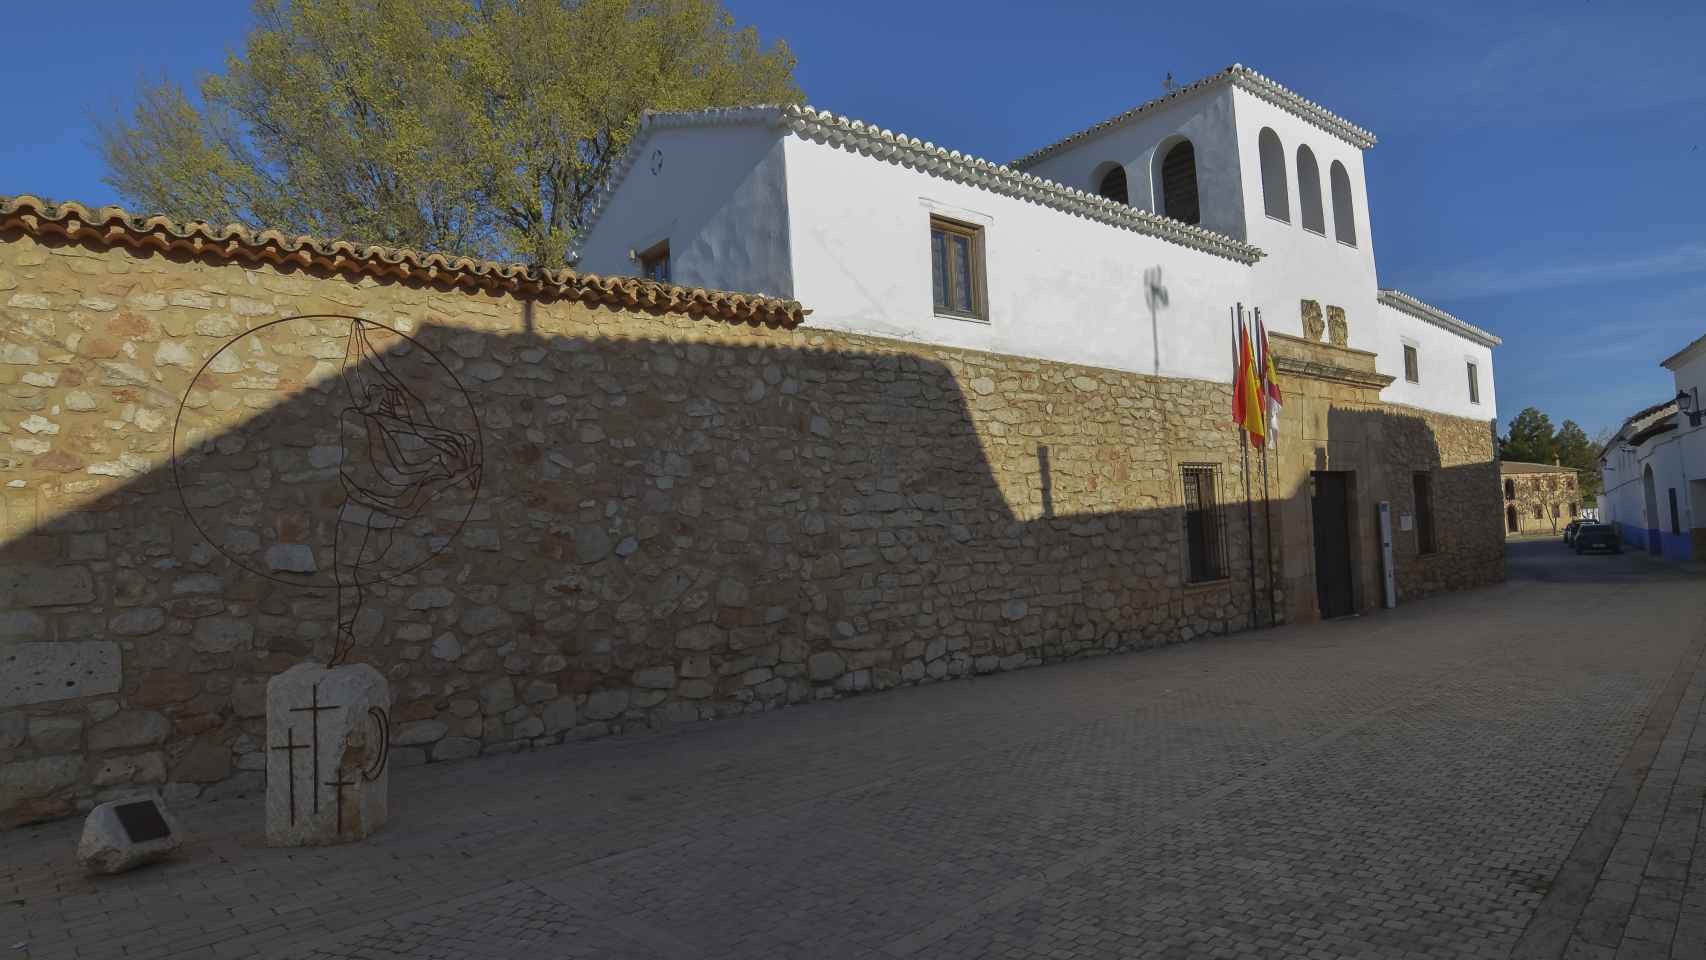 Museo Casa de Dulcinea (El Toboso)